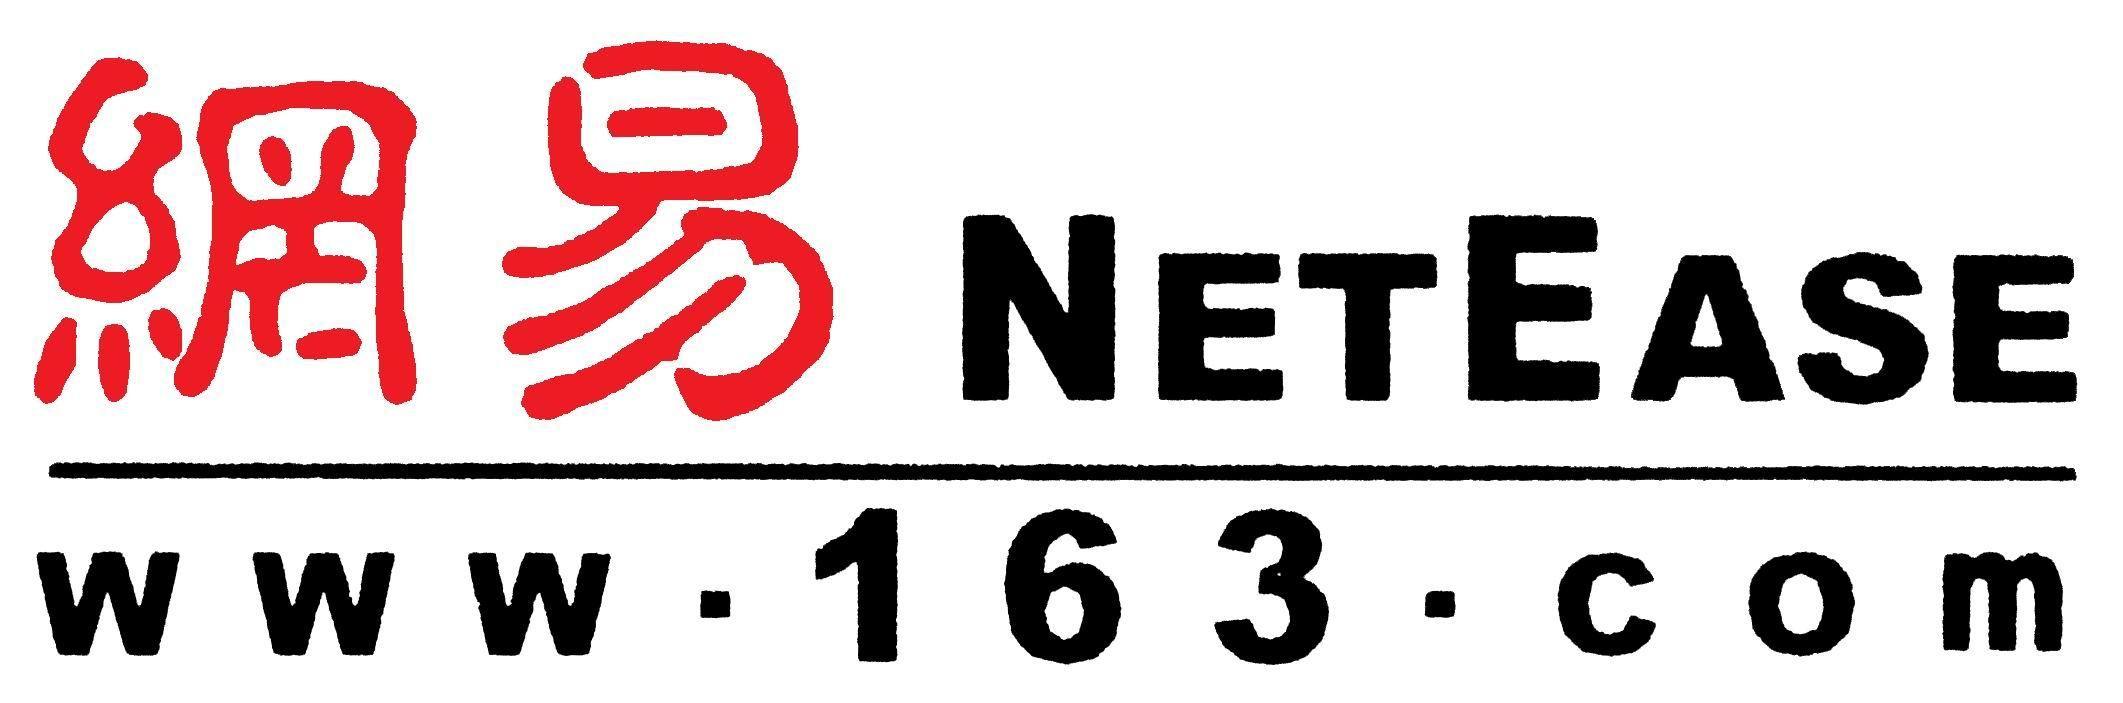 NetEase Logo - NetEase Logo | LOGOSURFER.COM